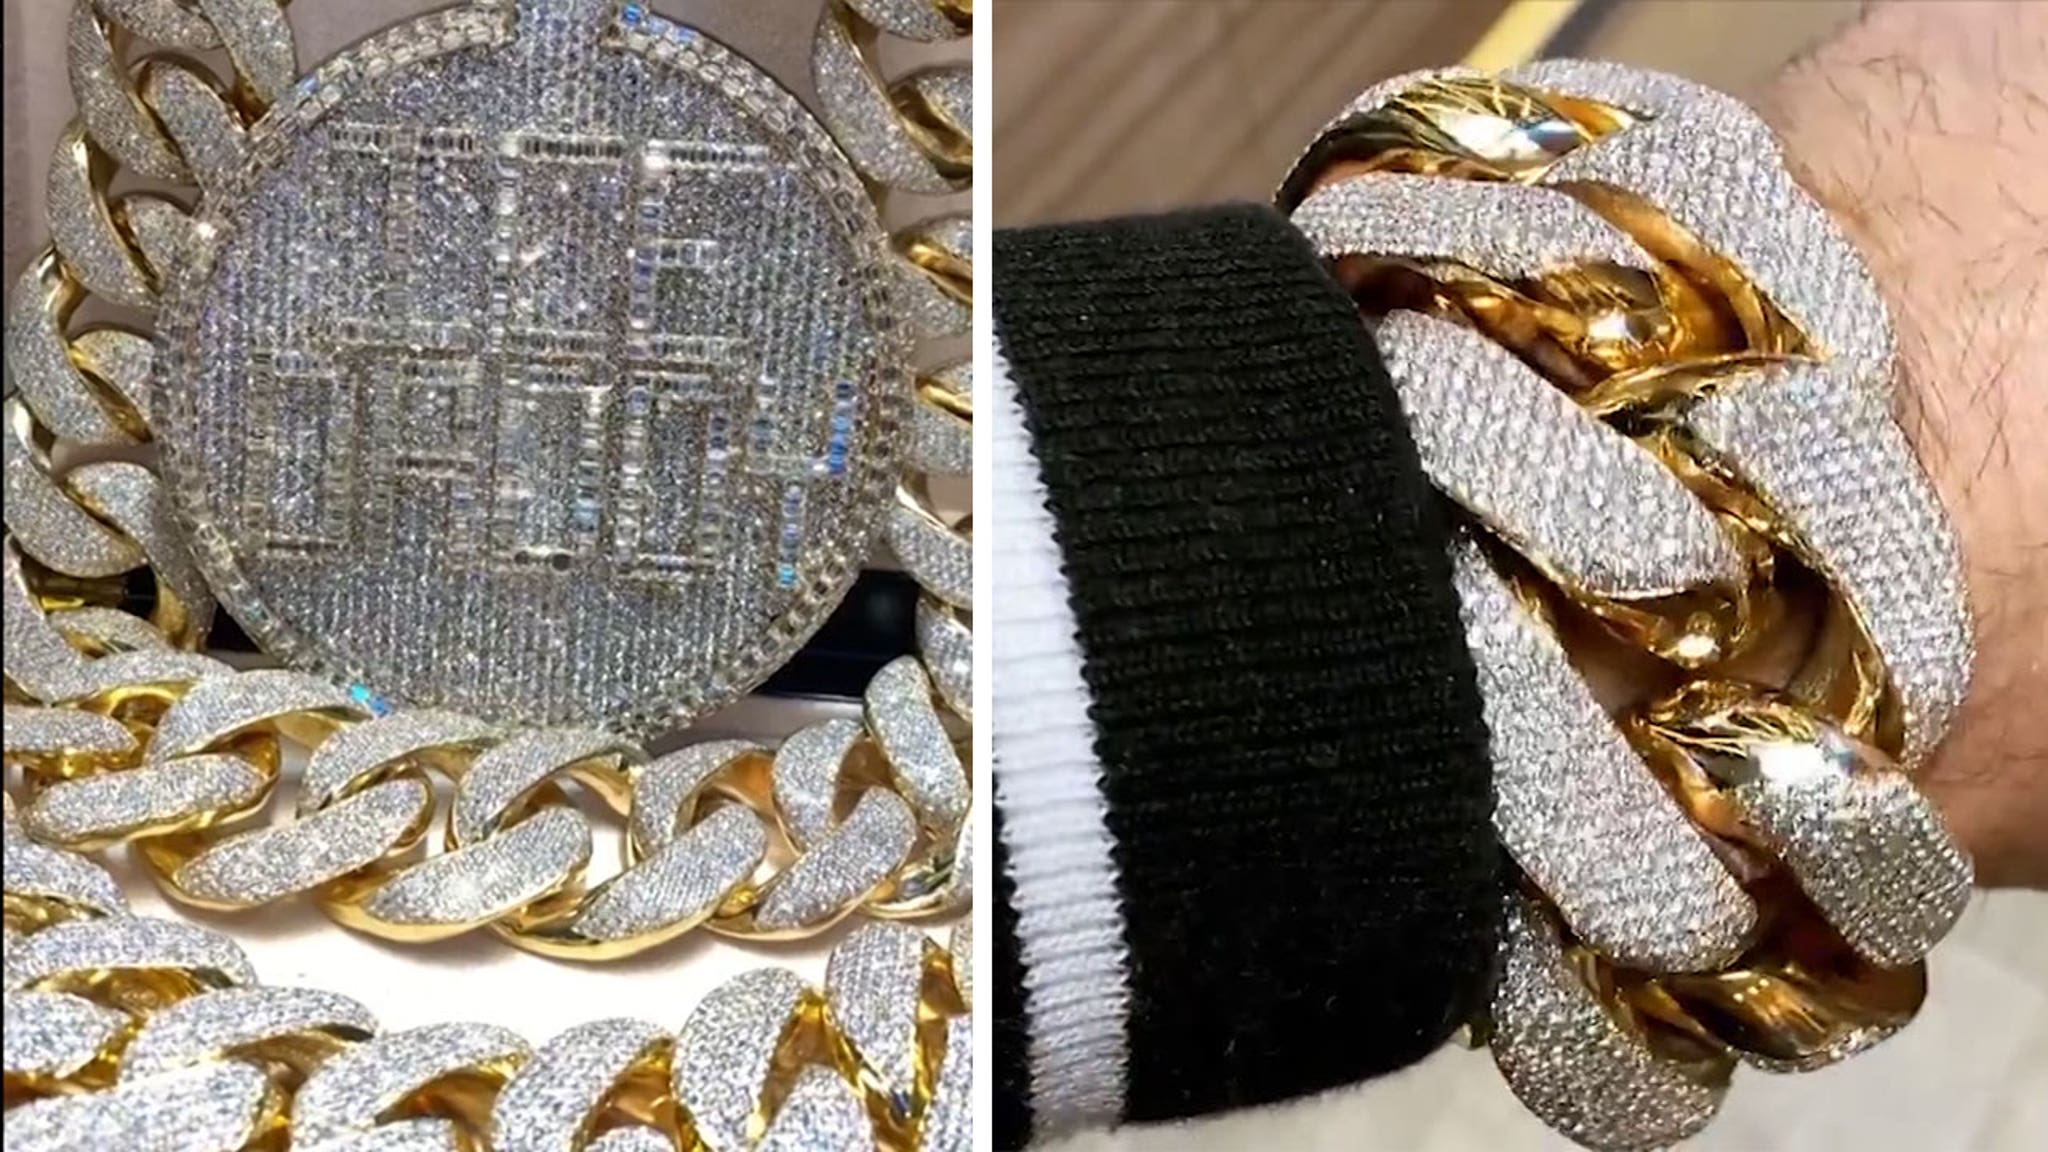 Gucci Mane Gave A Fan $5,000 For Returning His Bracelet